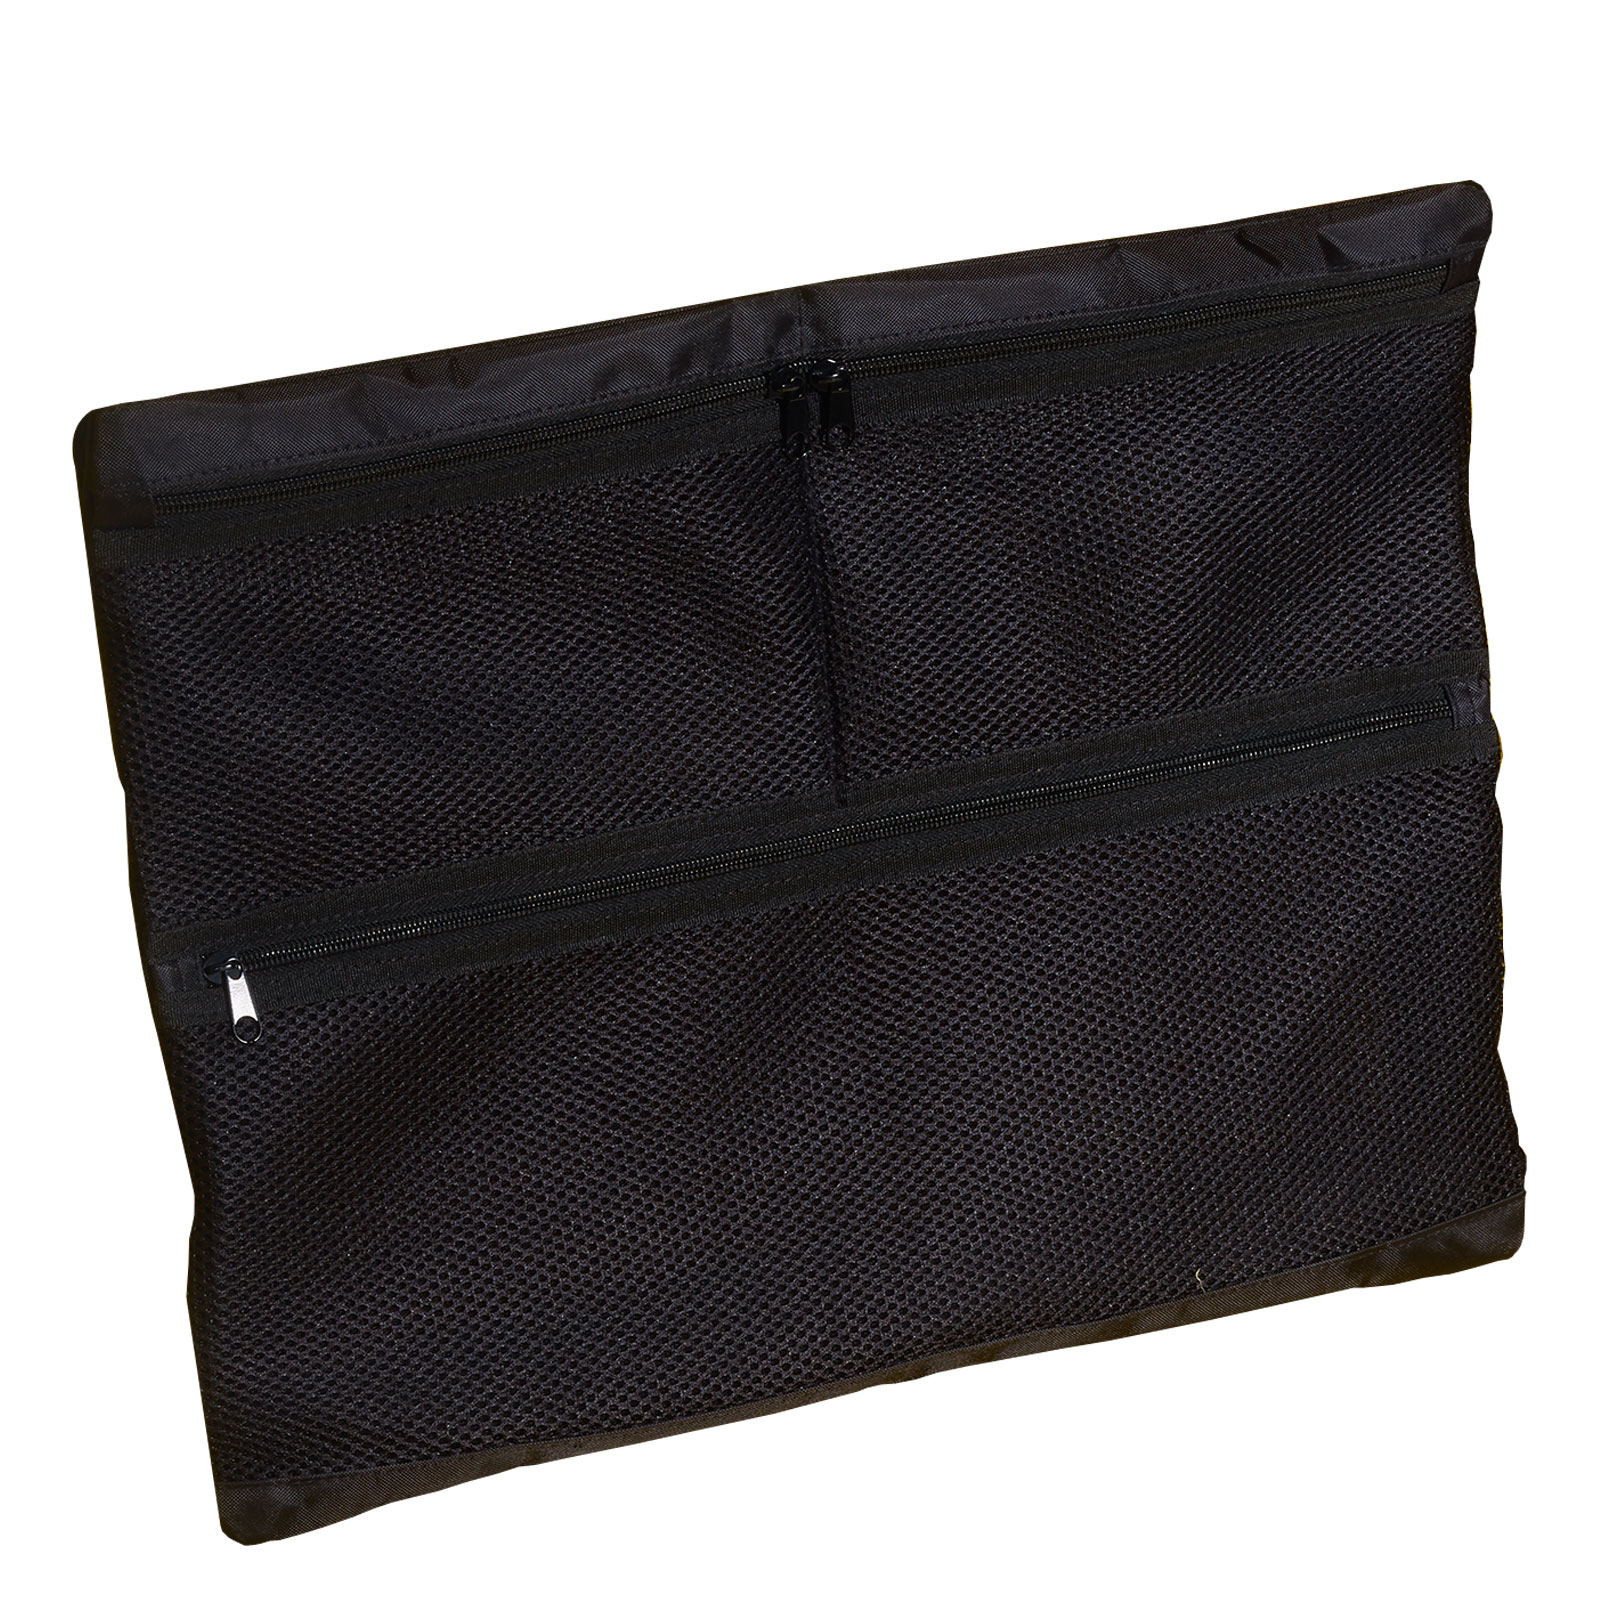 B&W Netz-Deckeltasche für Outdoor Cases, Typ 6000 / 6040